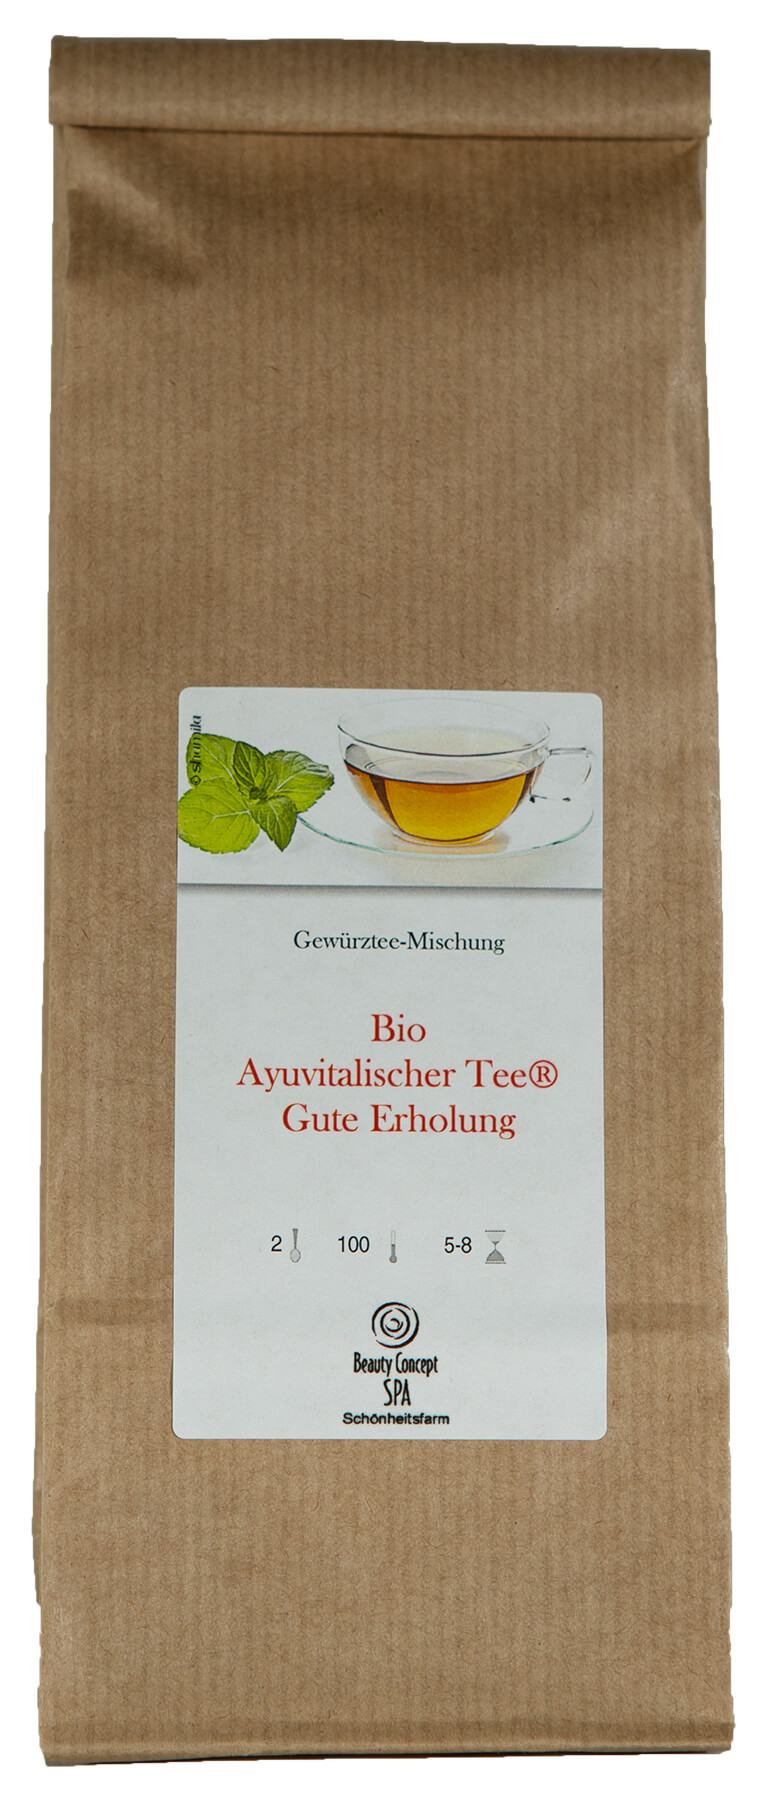 "Gute Erholung" Ayurvedischer Bio Tee (R)